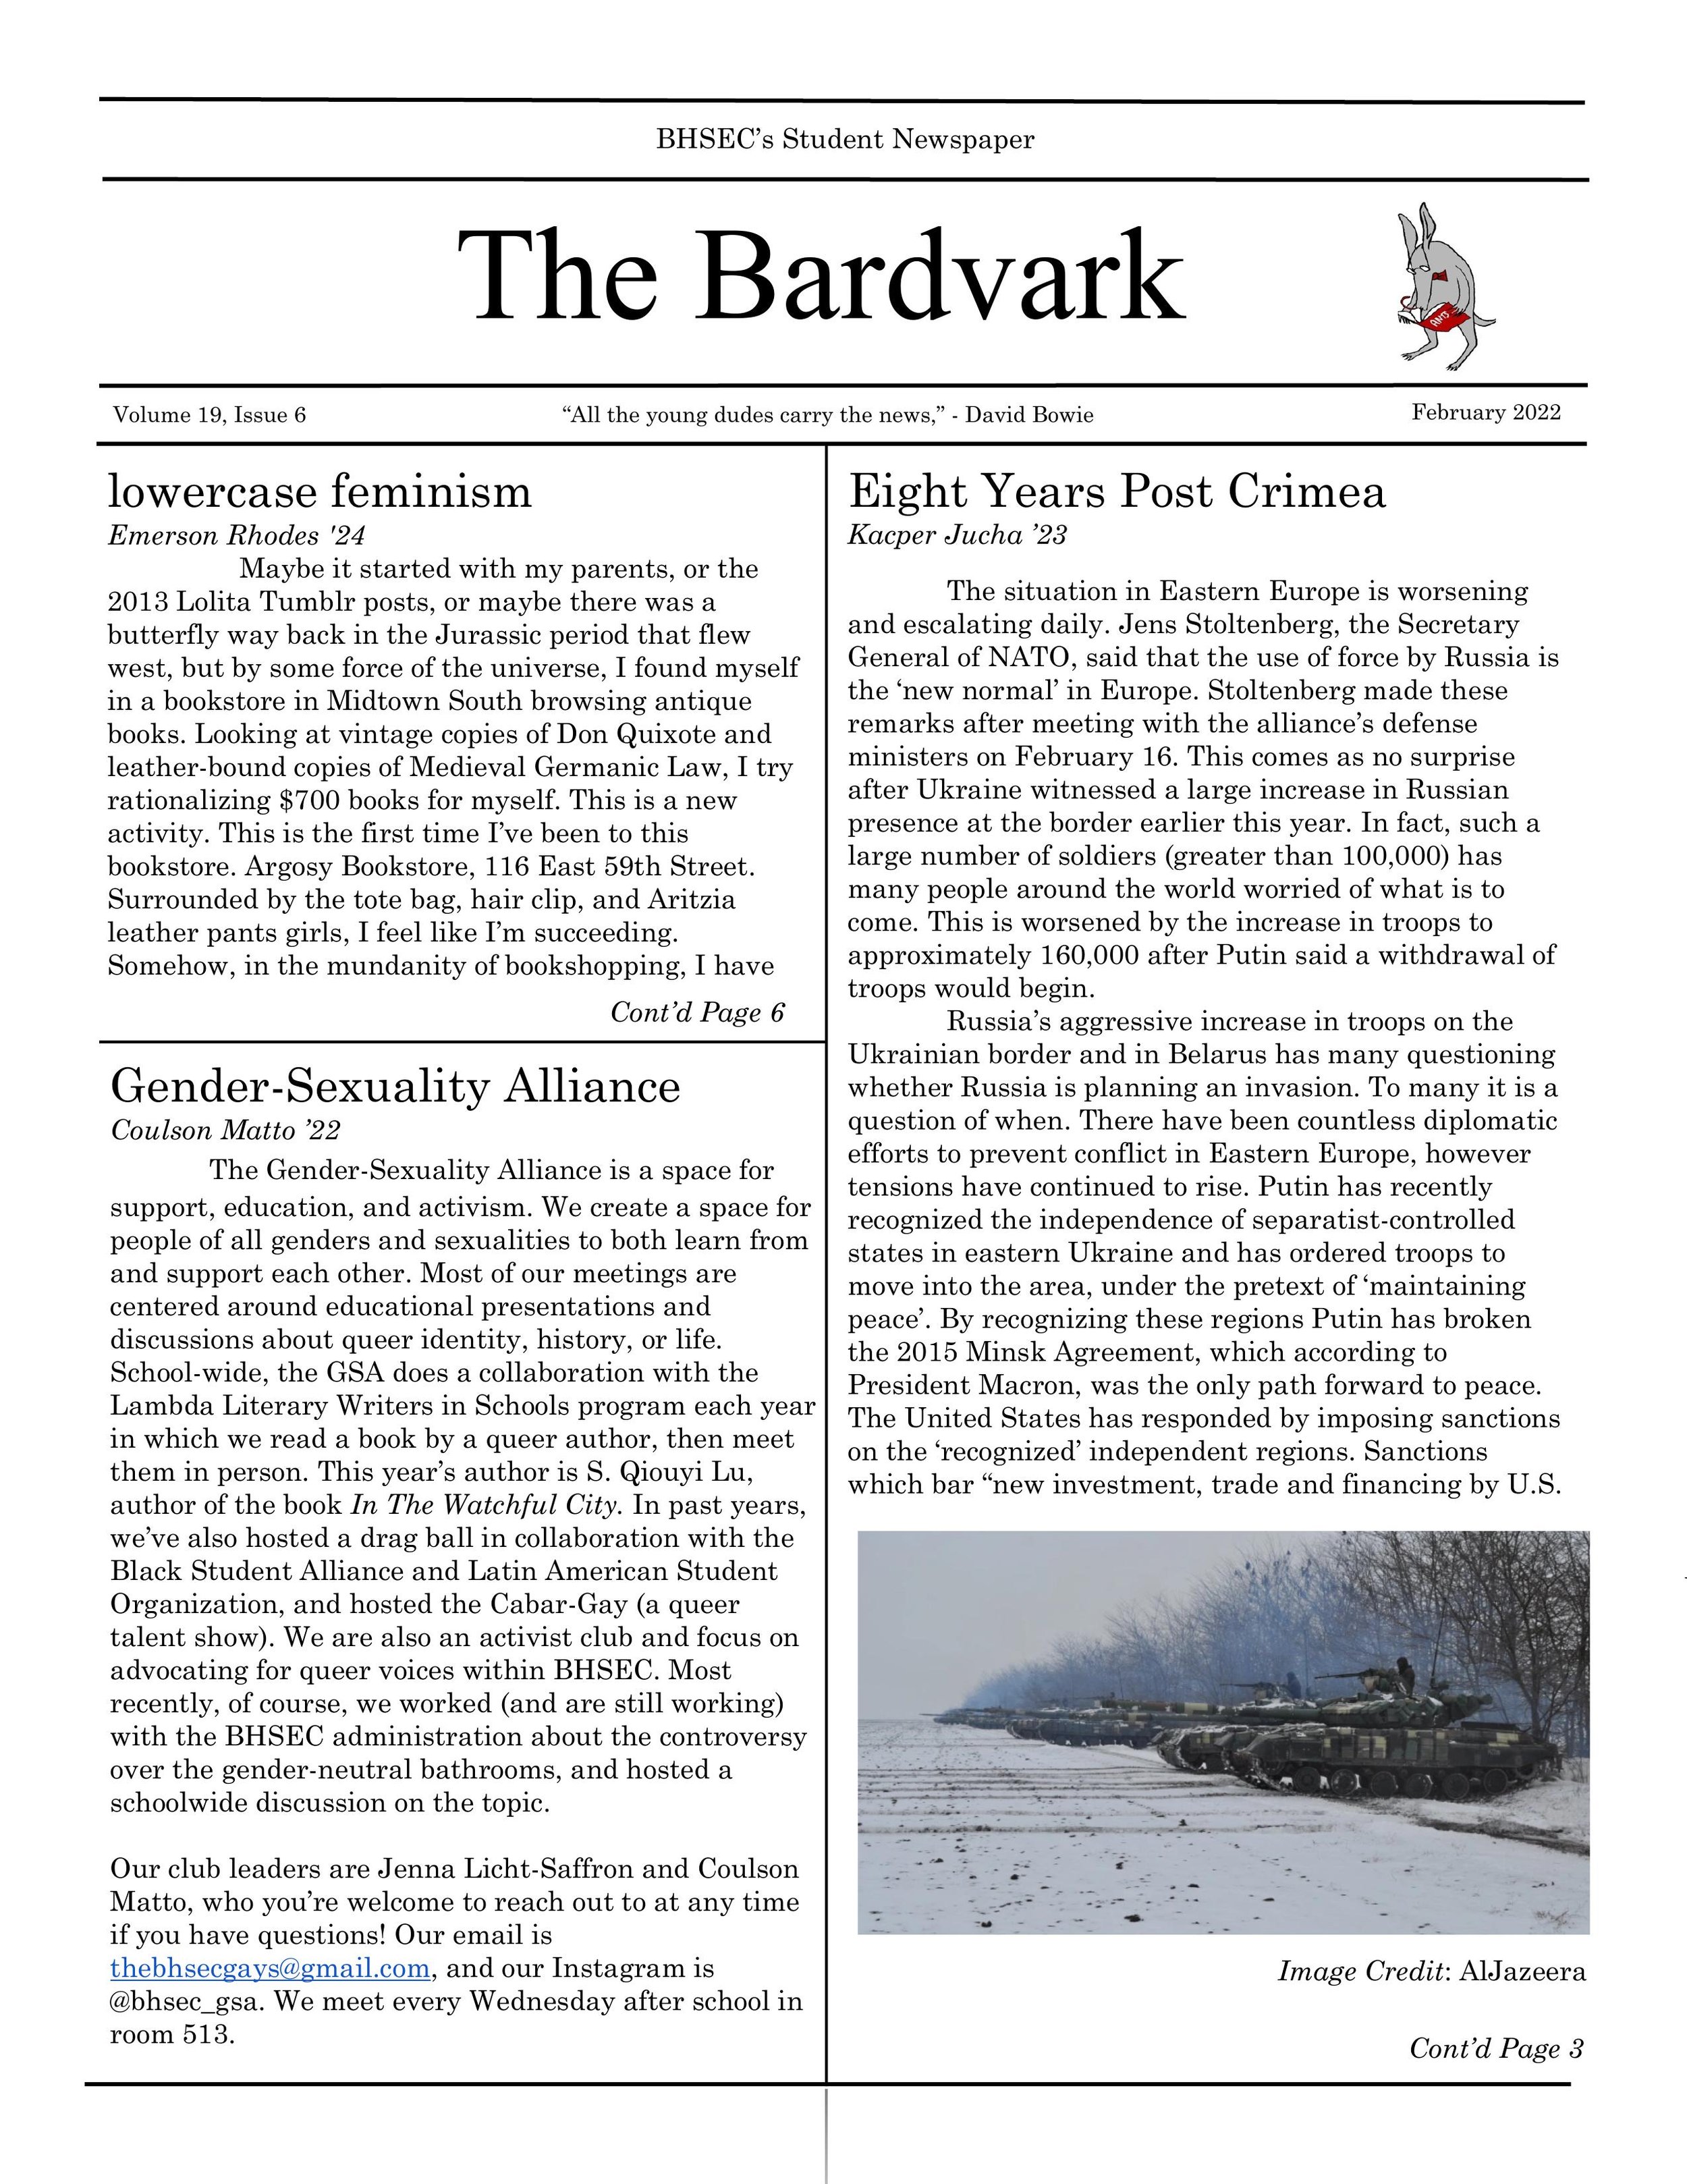 Bardvark_February_Issue__(1)-1[1].jpg